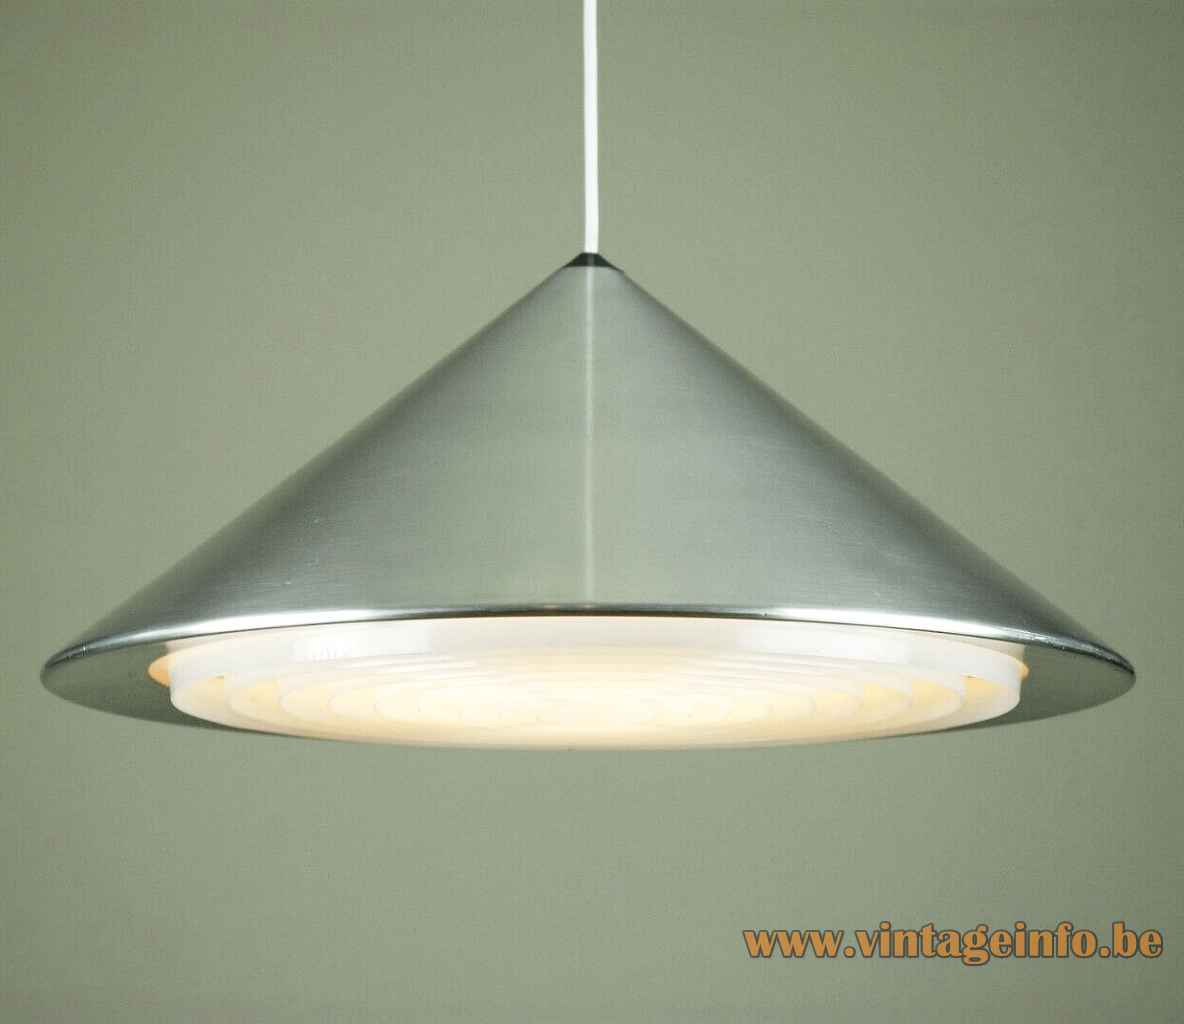 Fog & Mørup Classic pendant lamp round conical pyramid aluminium lampshade plastic grid 1960s design: Jo Hammerborg